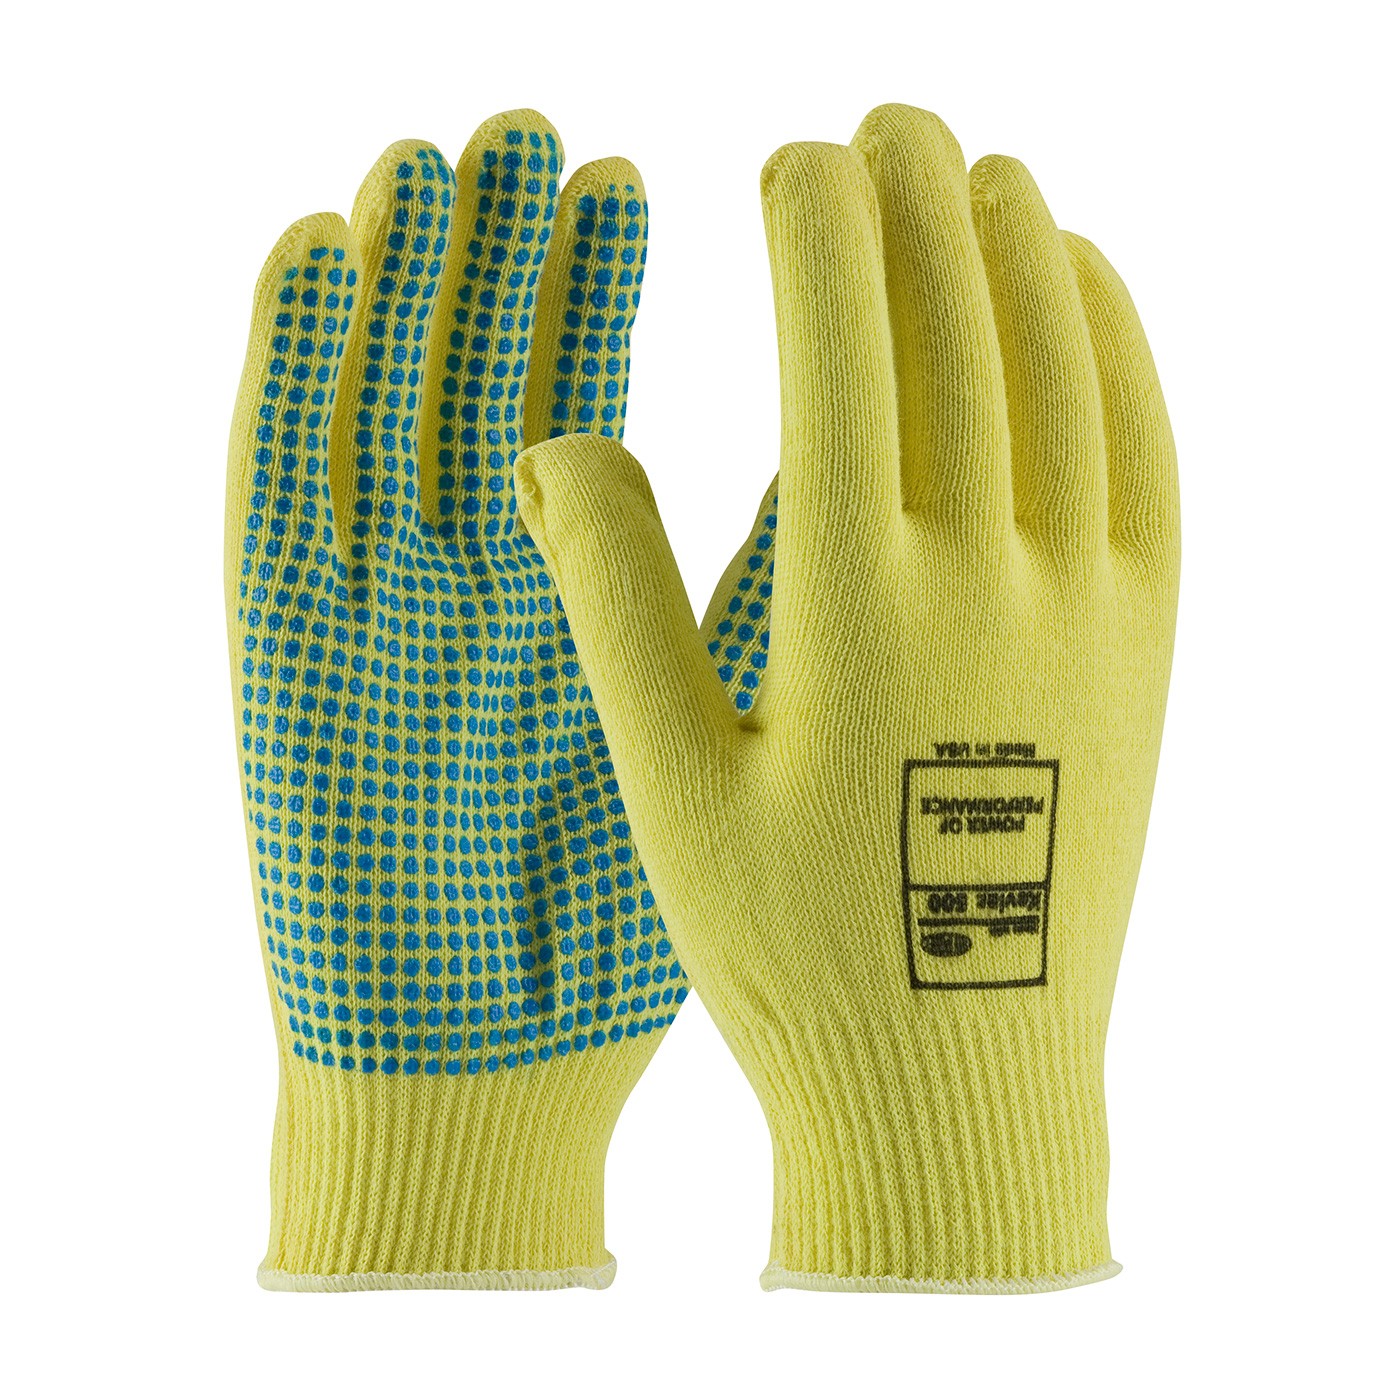 Kut Gard® Seamless Knit Kevlar® Glove with PVC Dot Grip - Light Weight  (#08-K200PD)